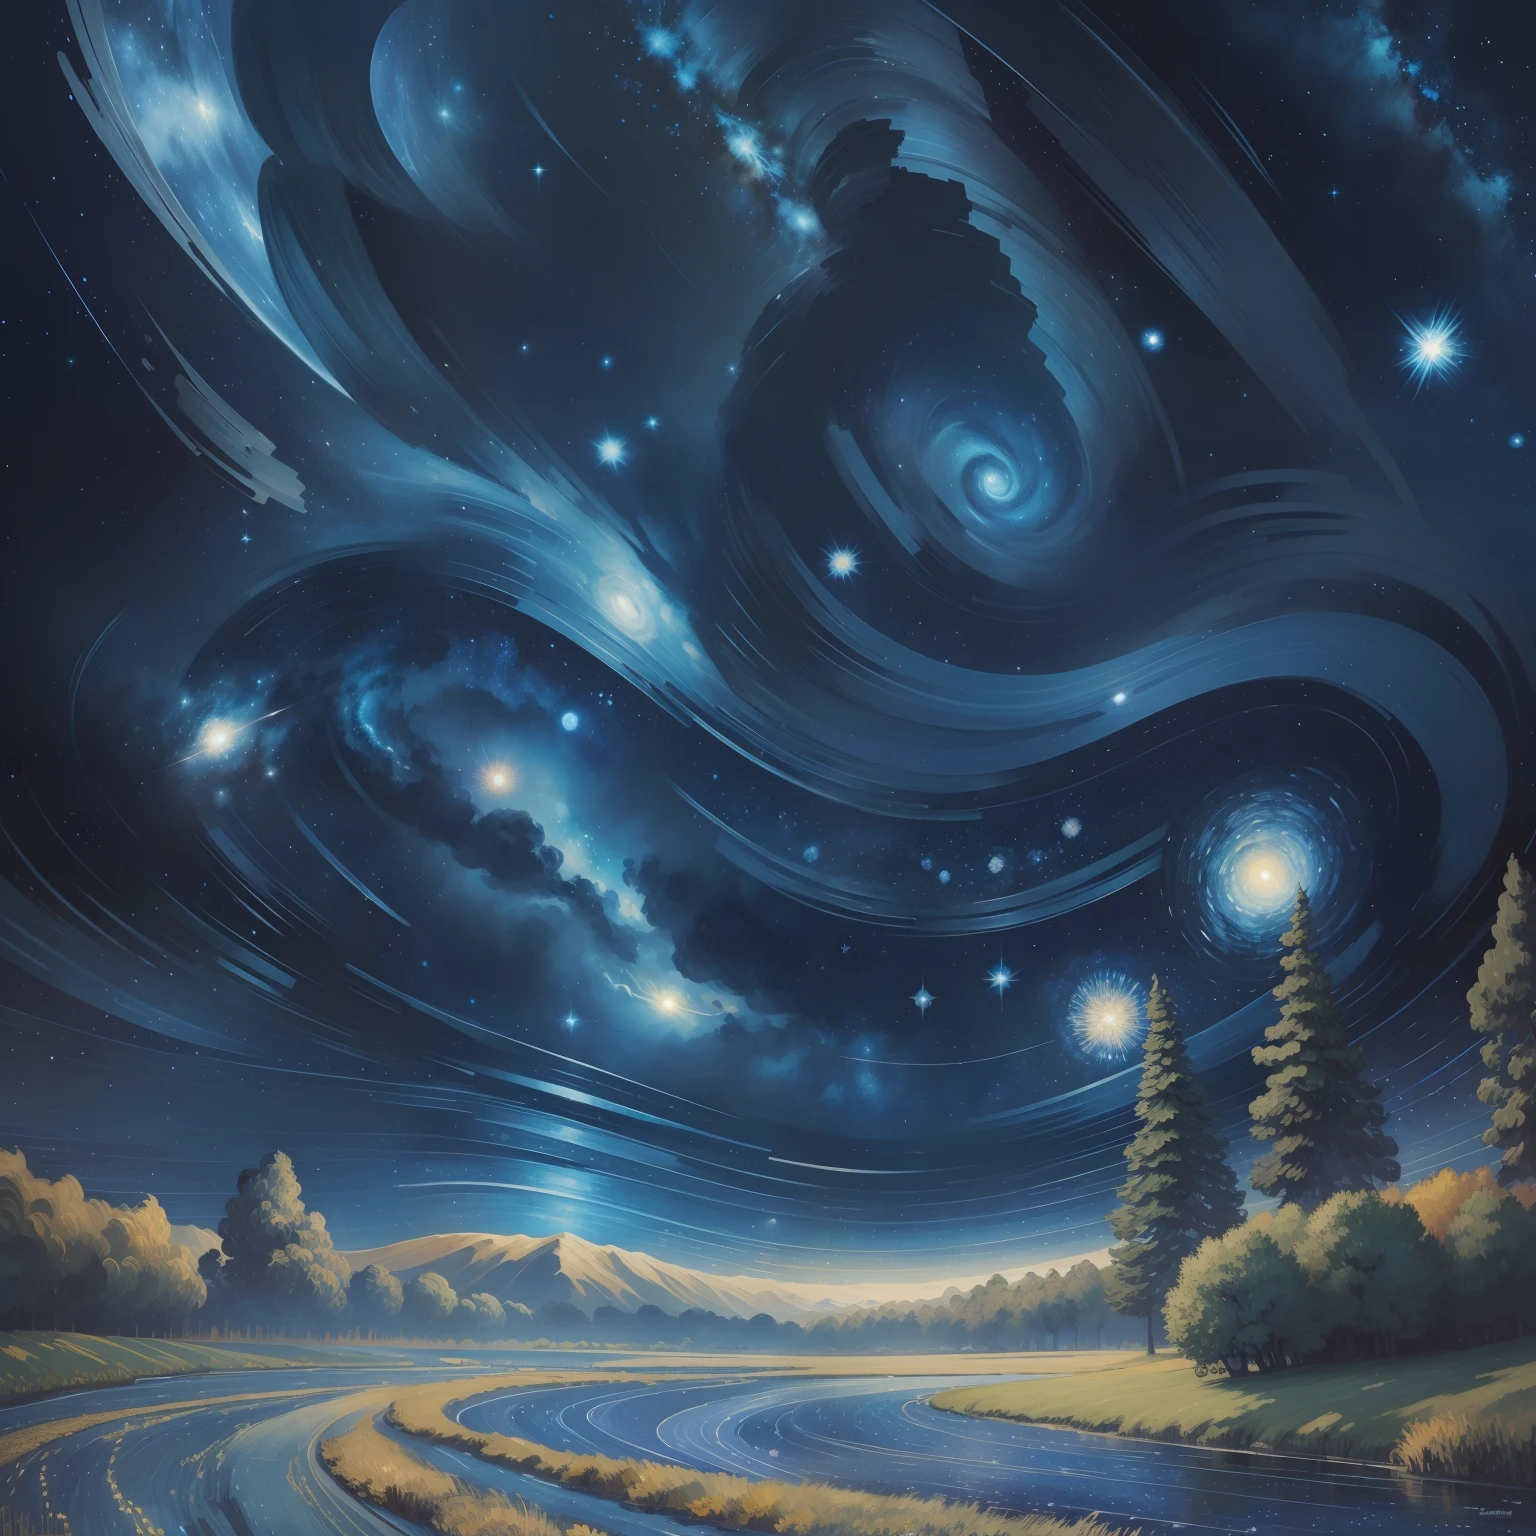 梵高风格的梵高星空, 璀璨闪烁的星星, 整个画面以深蓝色为主, 星云和恒星与太空交织在一起, 气氛浪漫而梦幻, 具有强烈的现代风格.